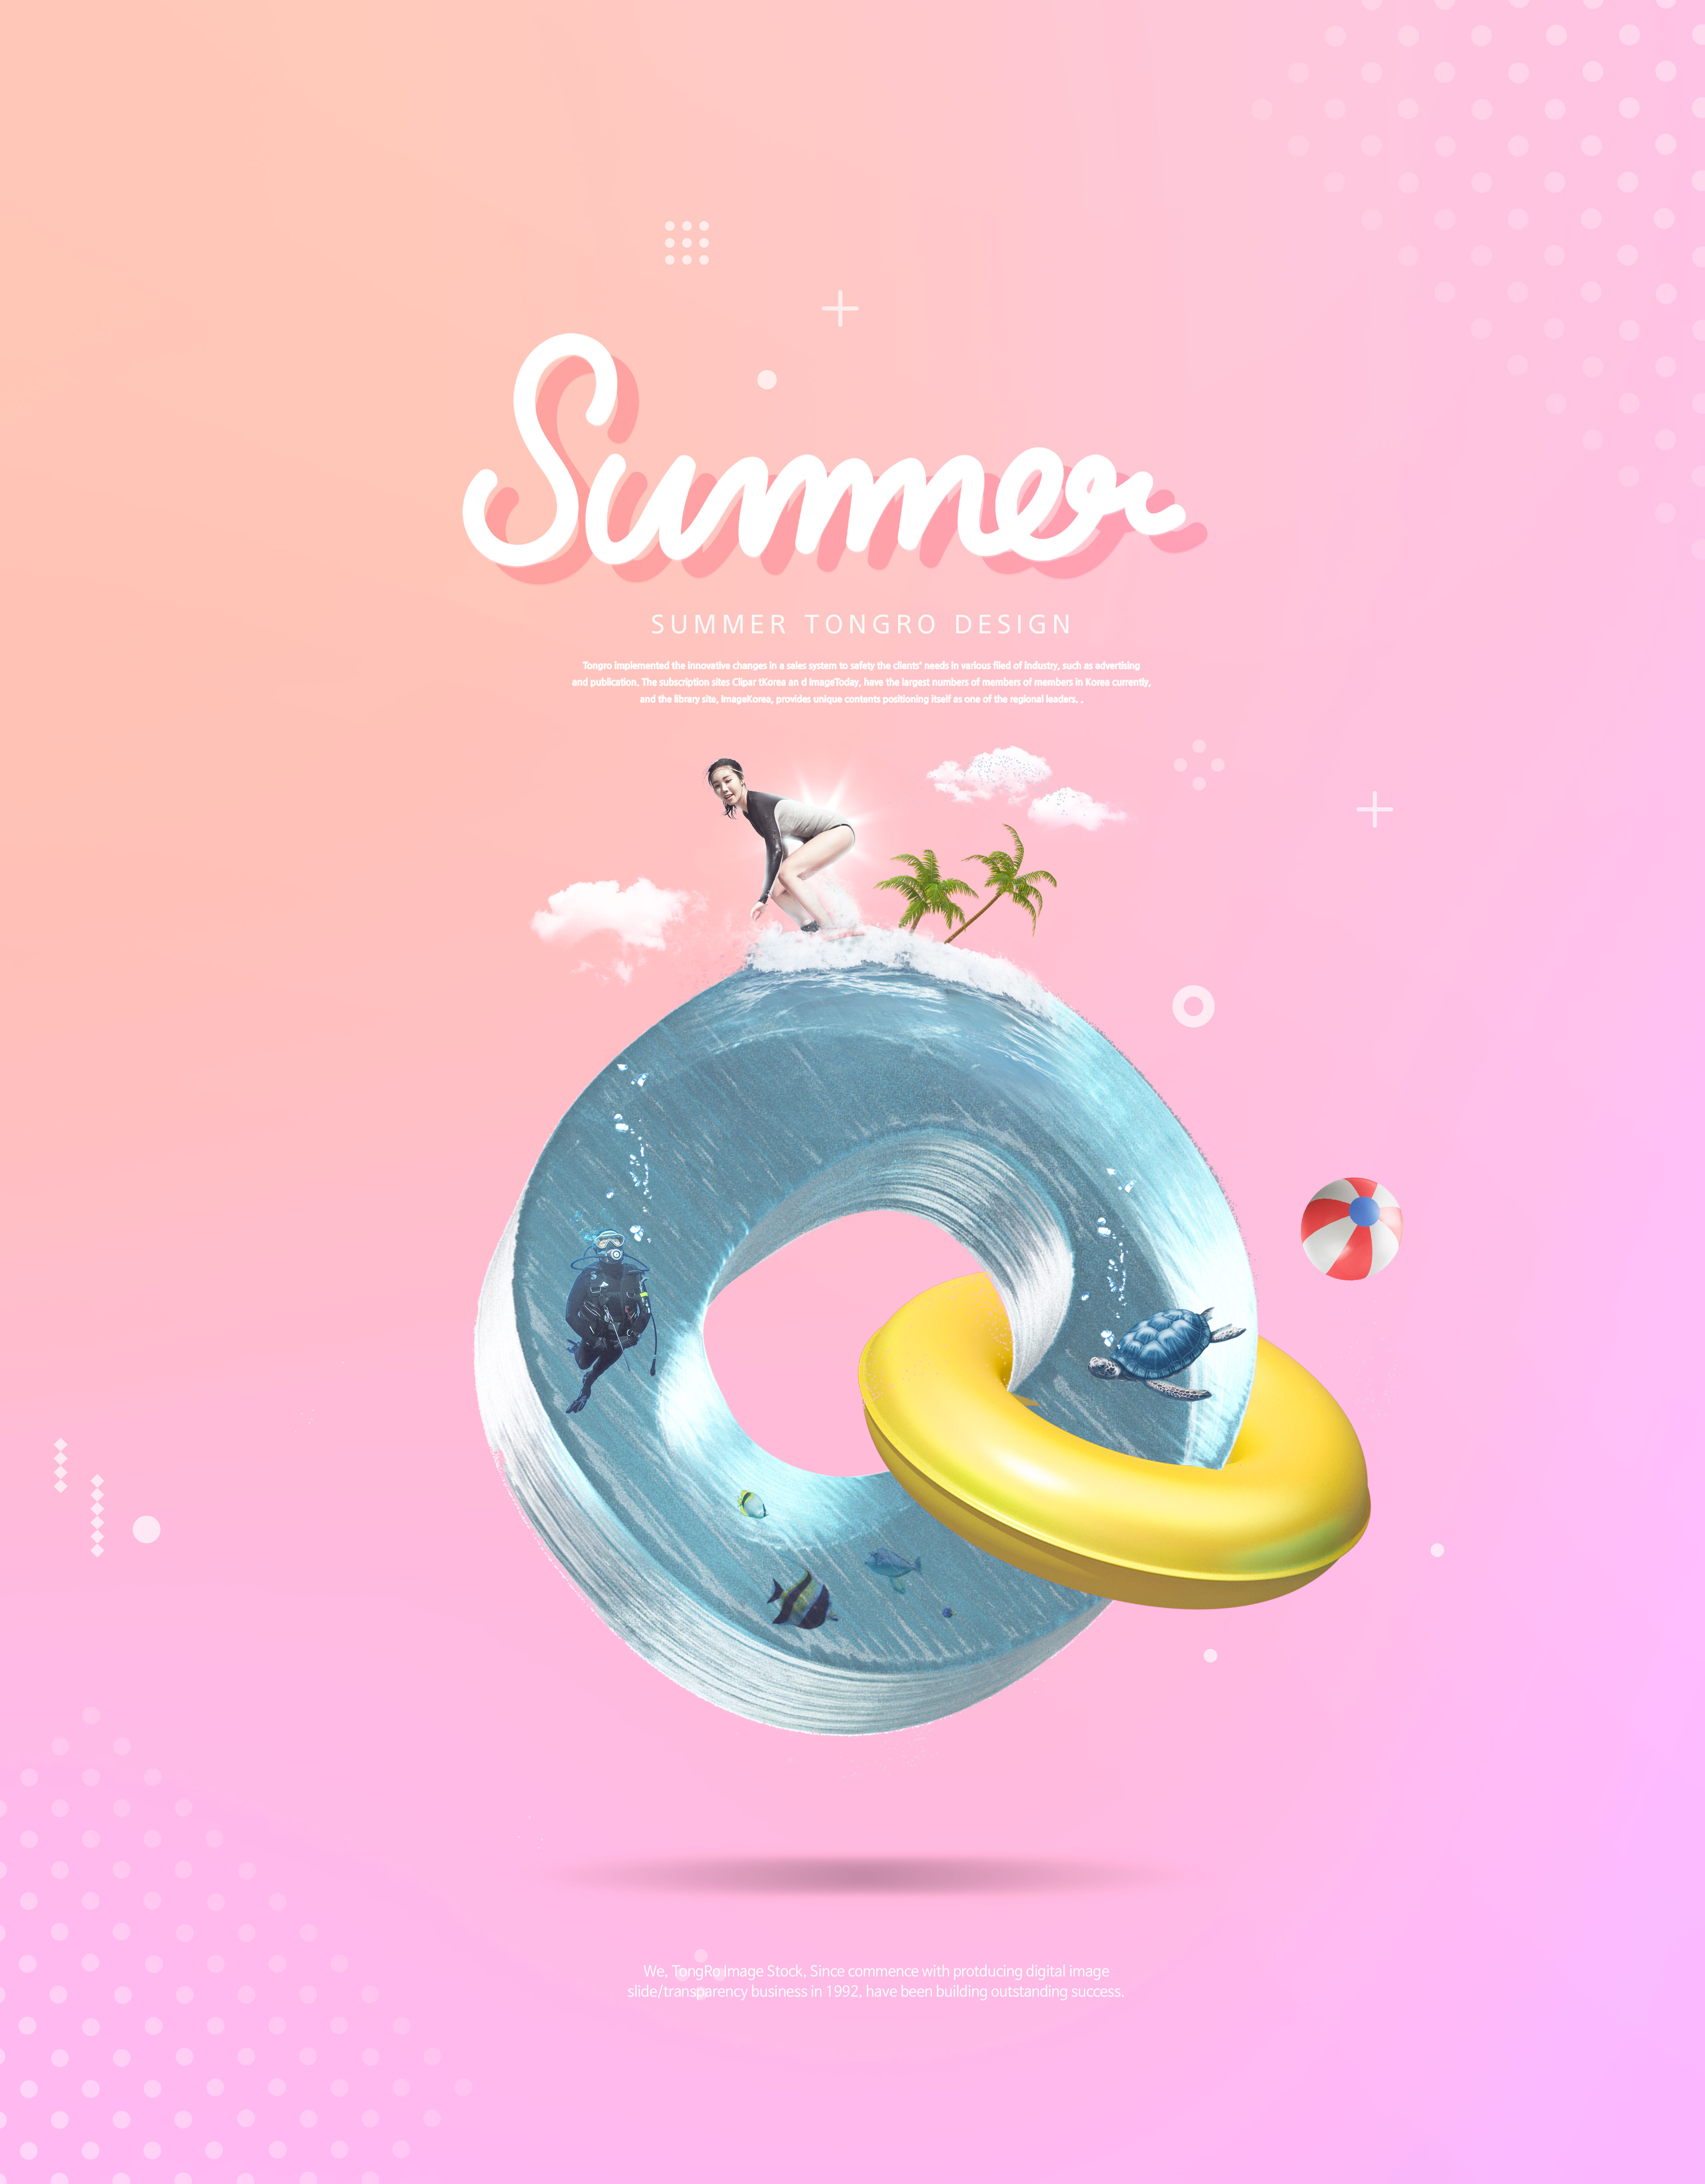 暑假旅行/夏季饮品促销广告活动海报设计套装插图(6)